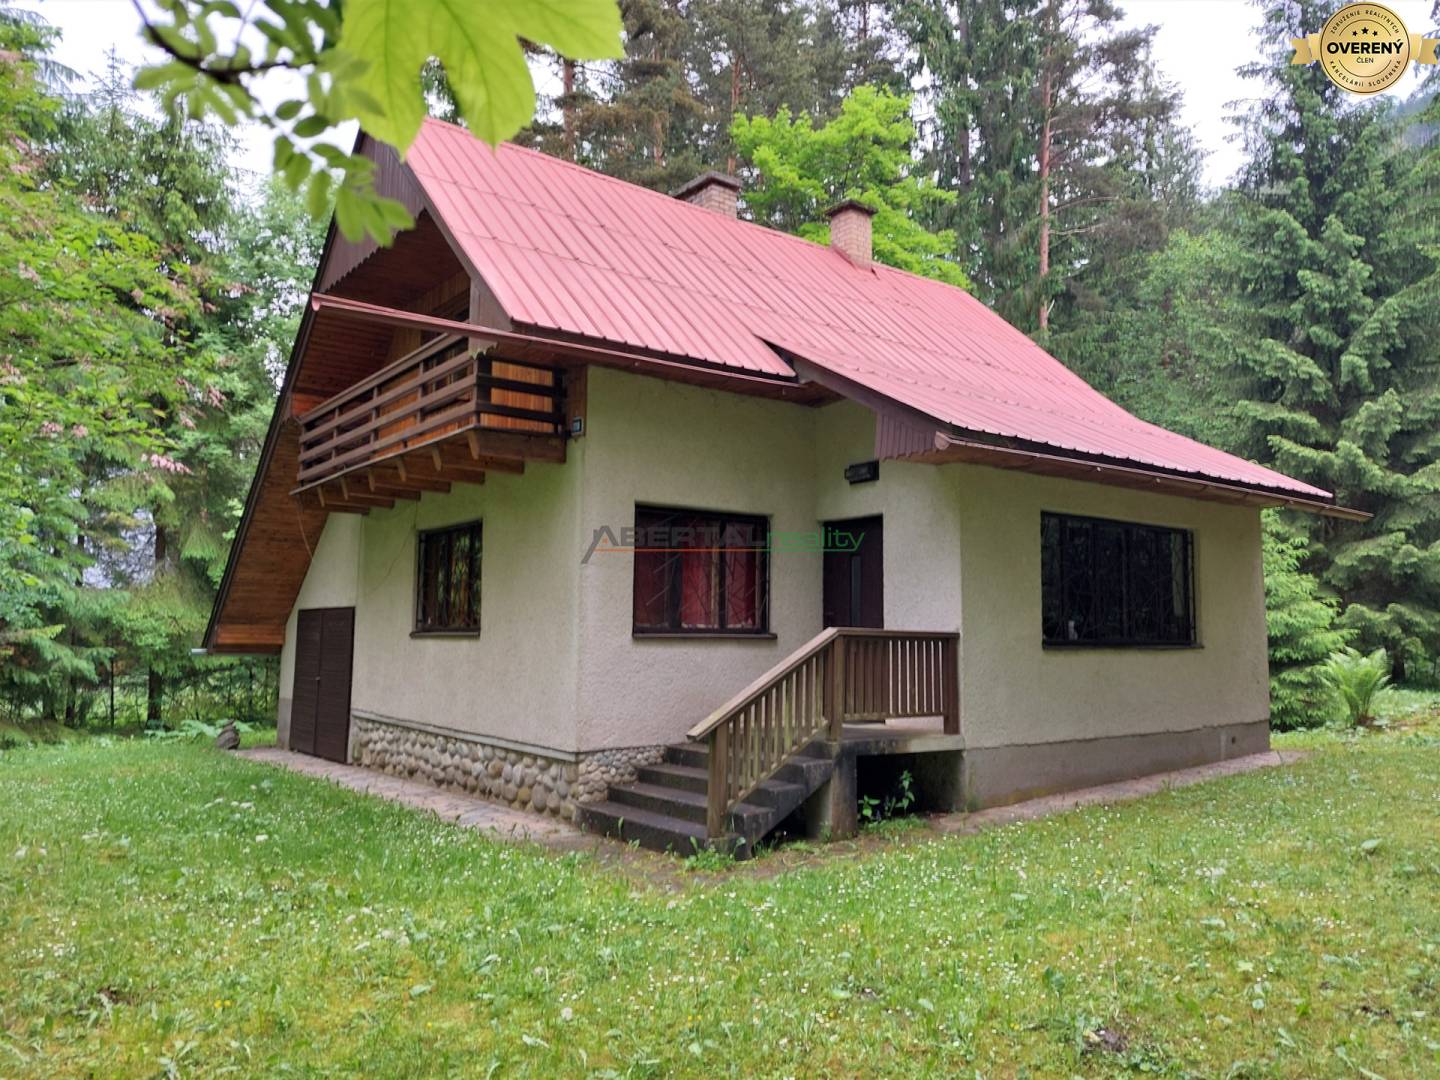 Sale Cottage, Cottage, Jánska dolina, Liptovský Mikuláš, Slovakia